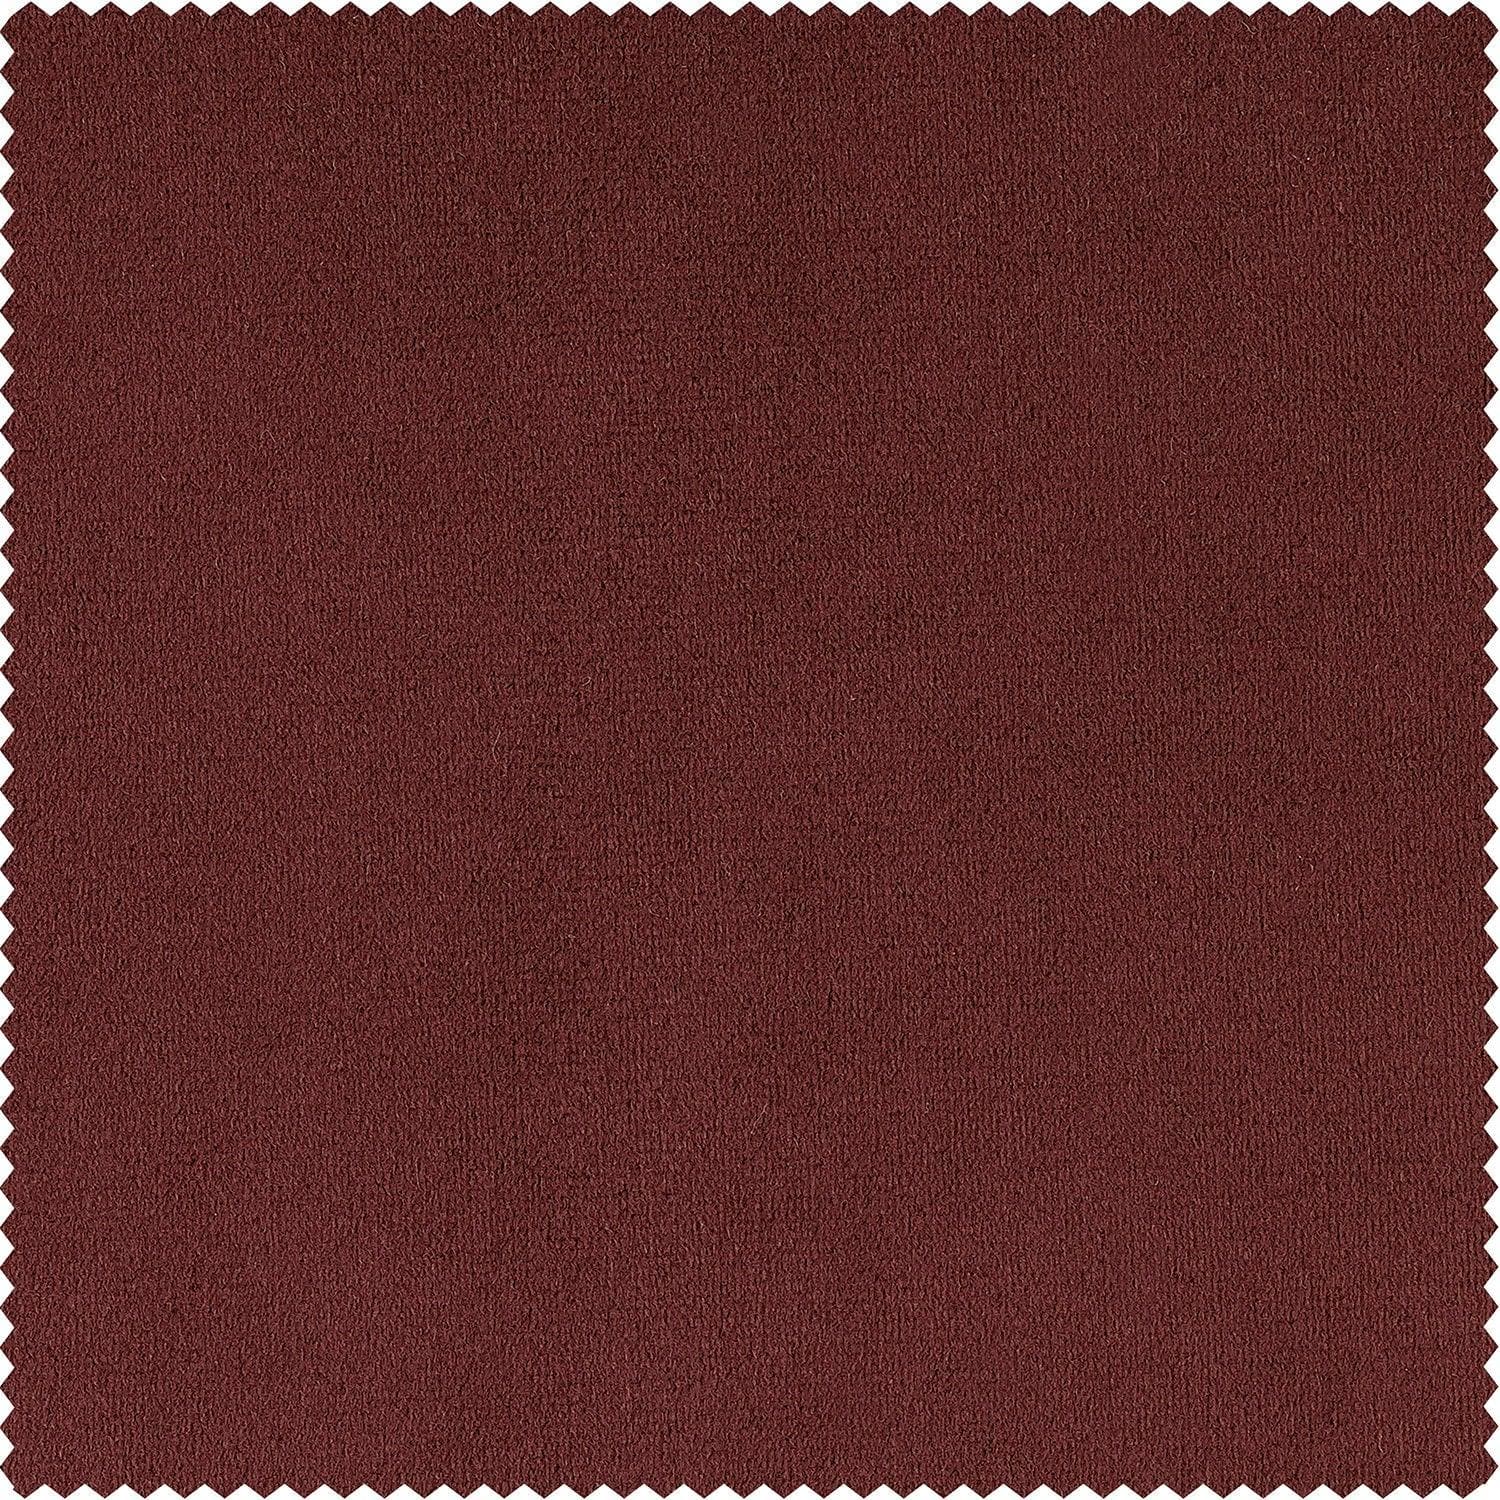 Crimson Rust Signature Velvet Blackout Curtain